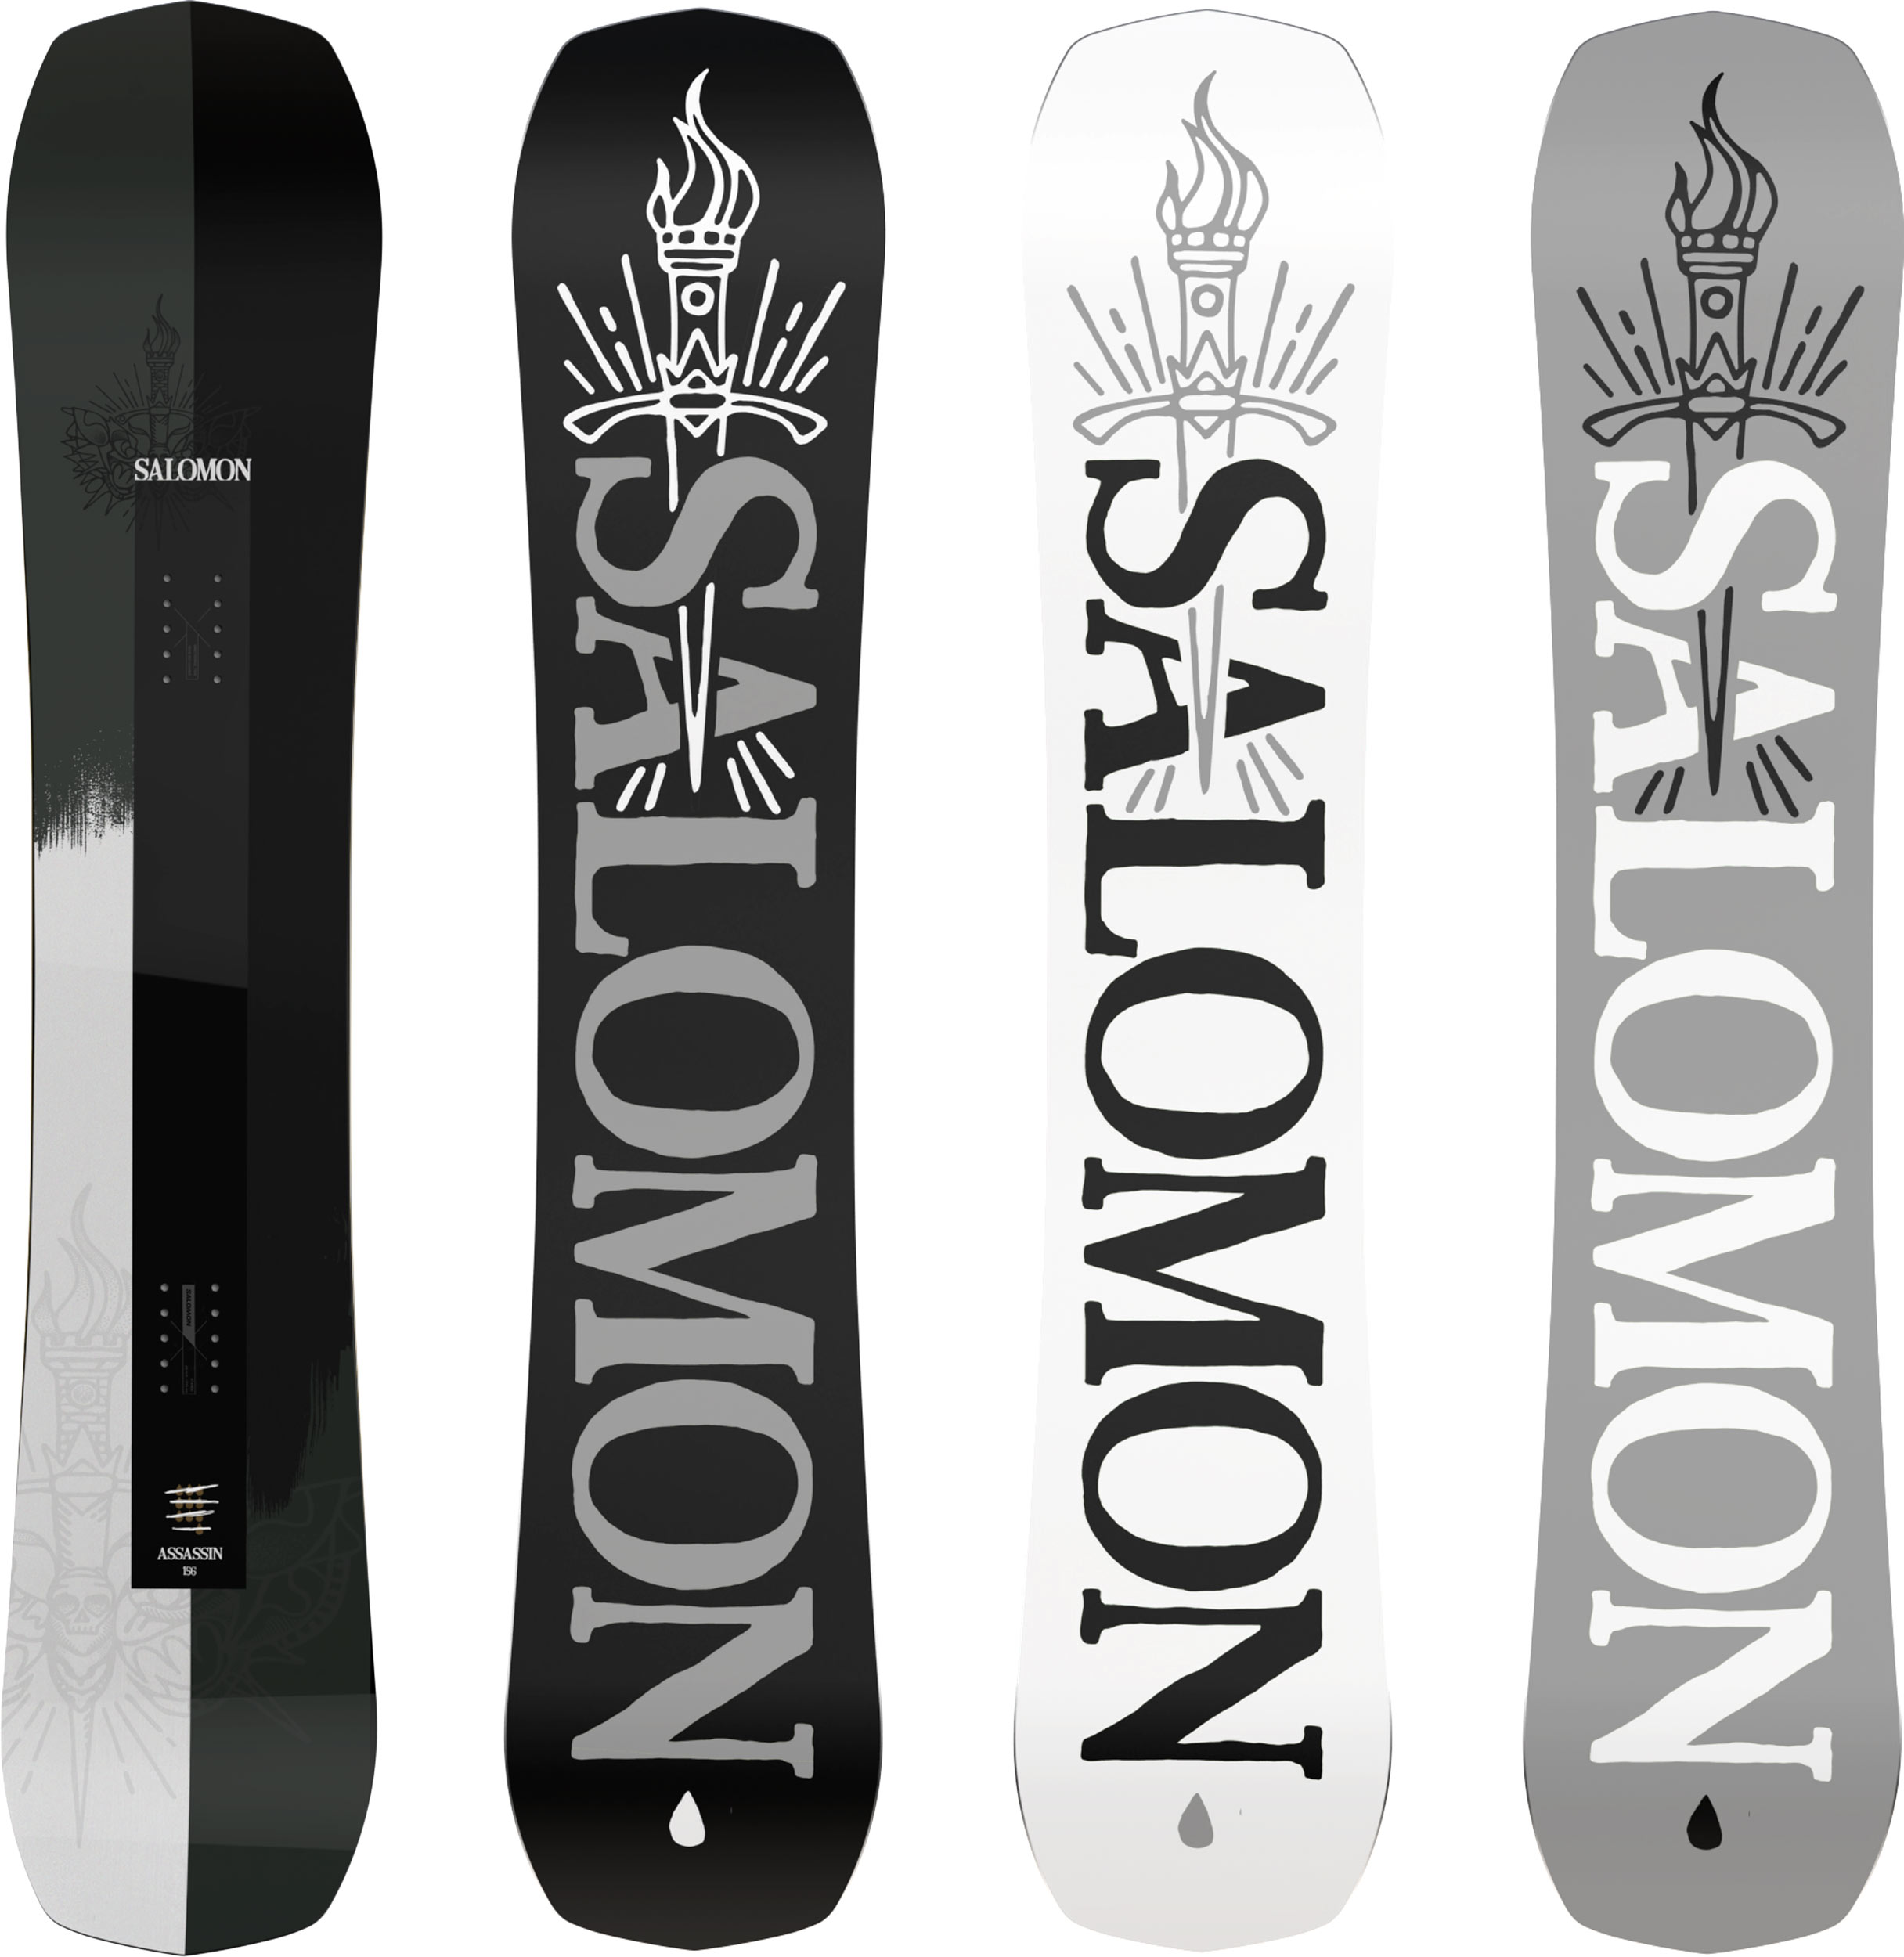 Salomon Assassin Pro Snowboard | Mount Everest